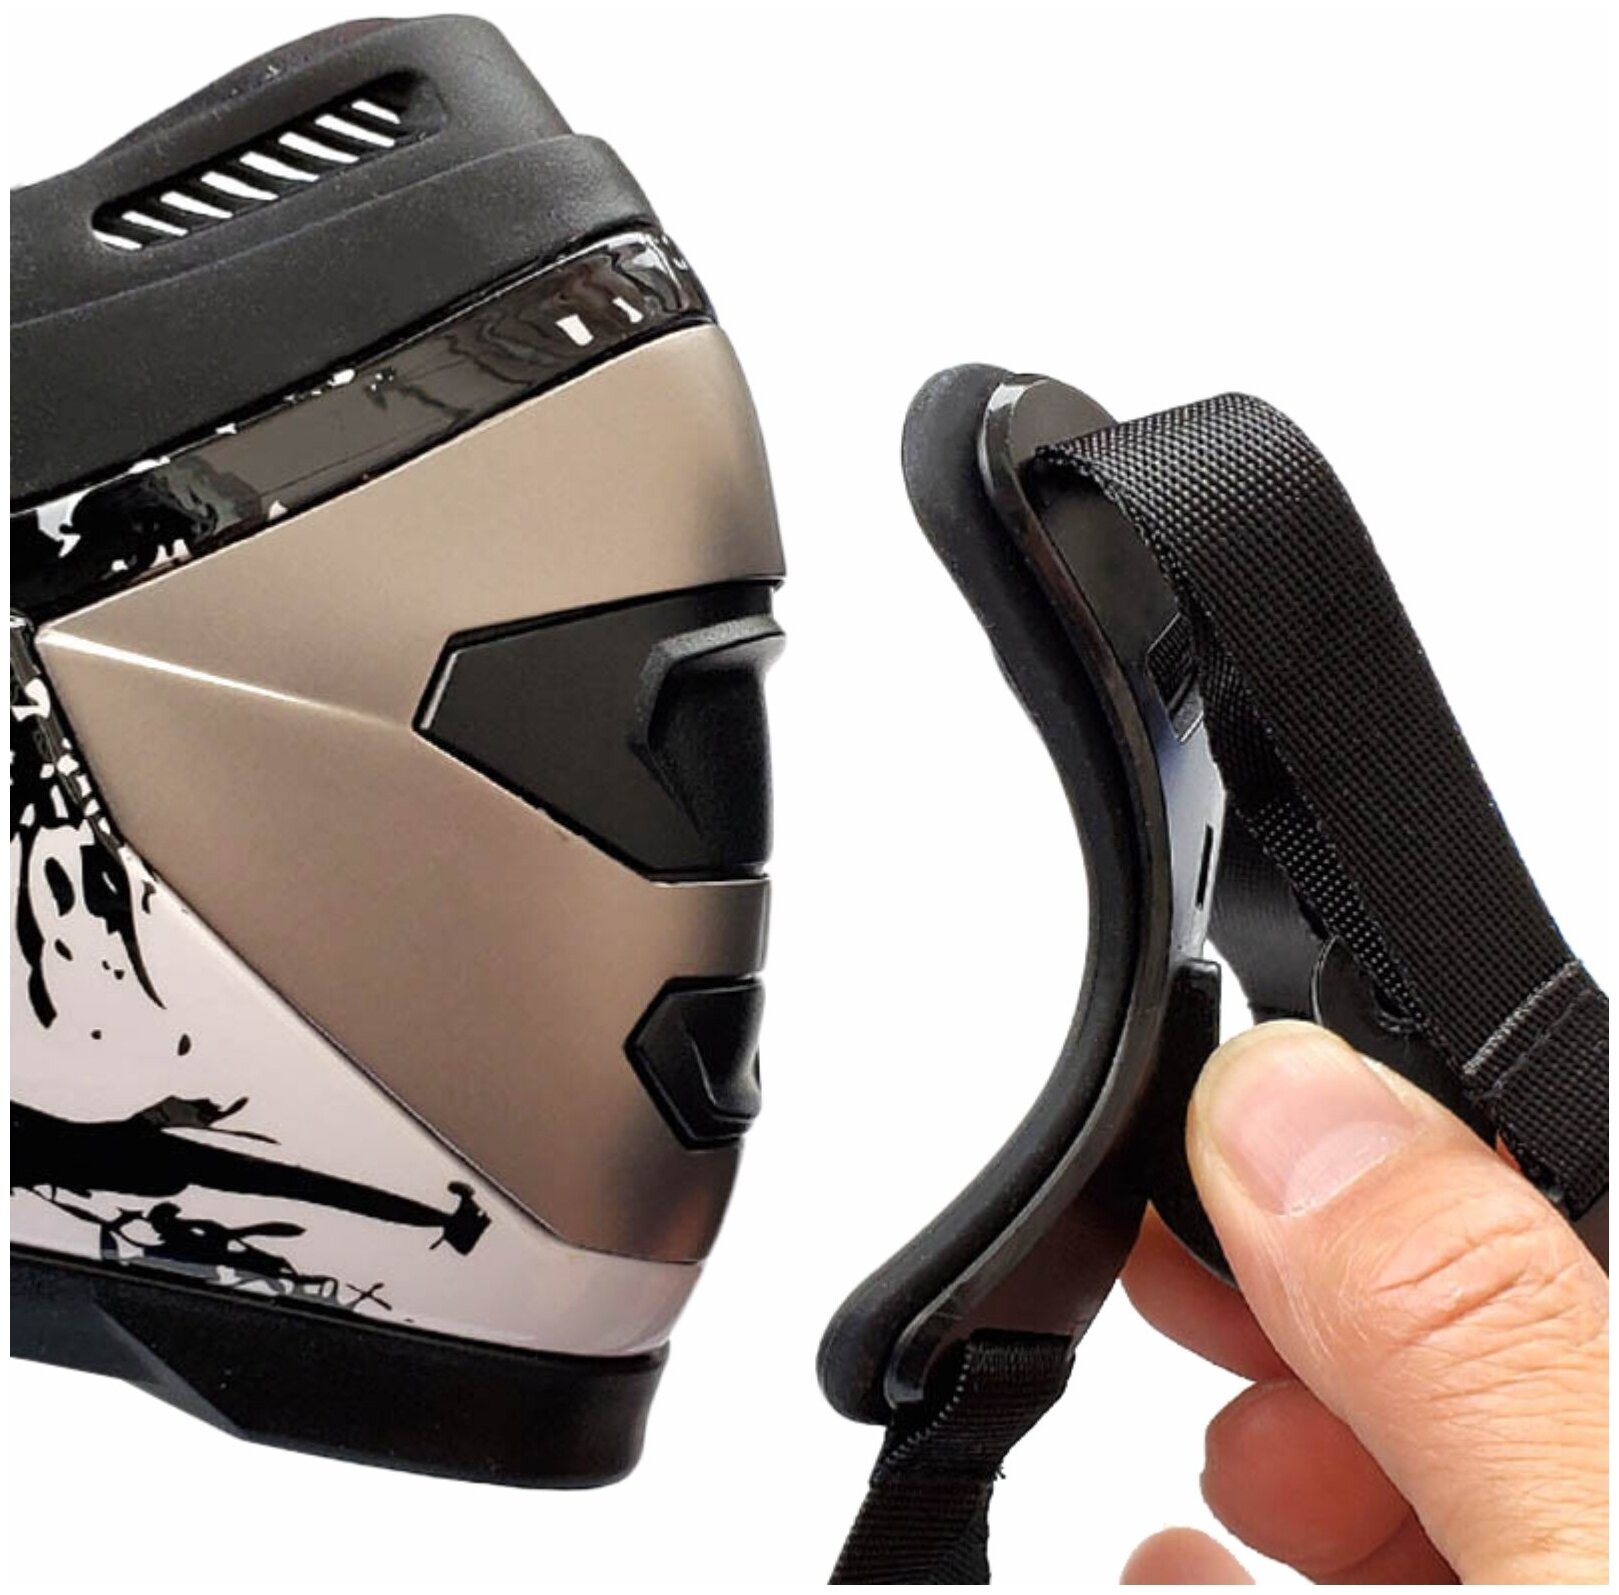 Крепление с фиксирующим винтом и гайкой на шлем для GoPro и других экшн камер